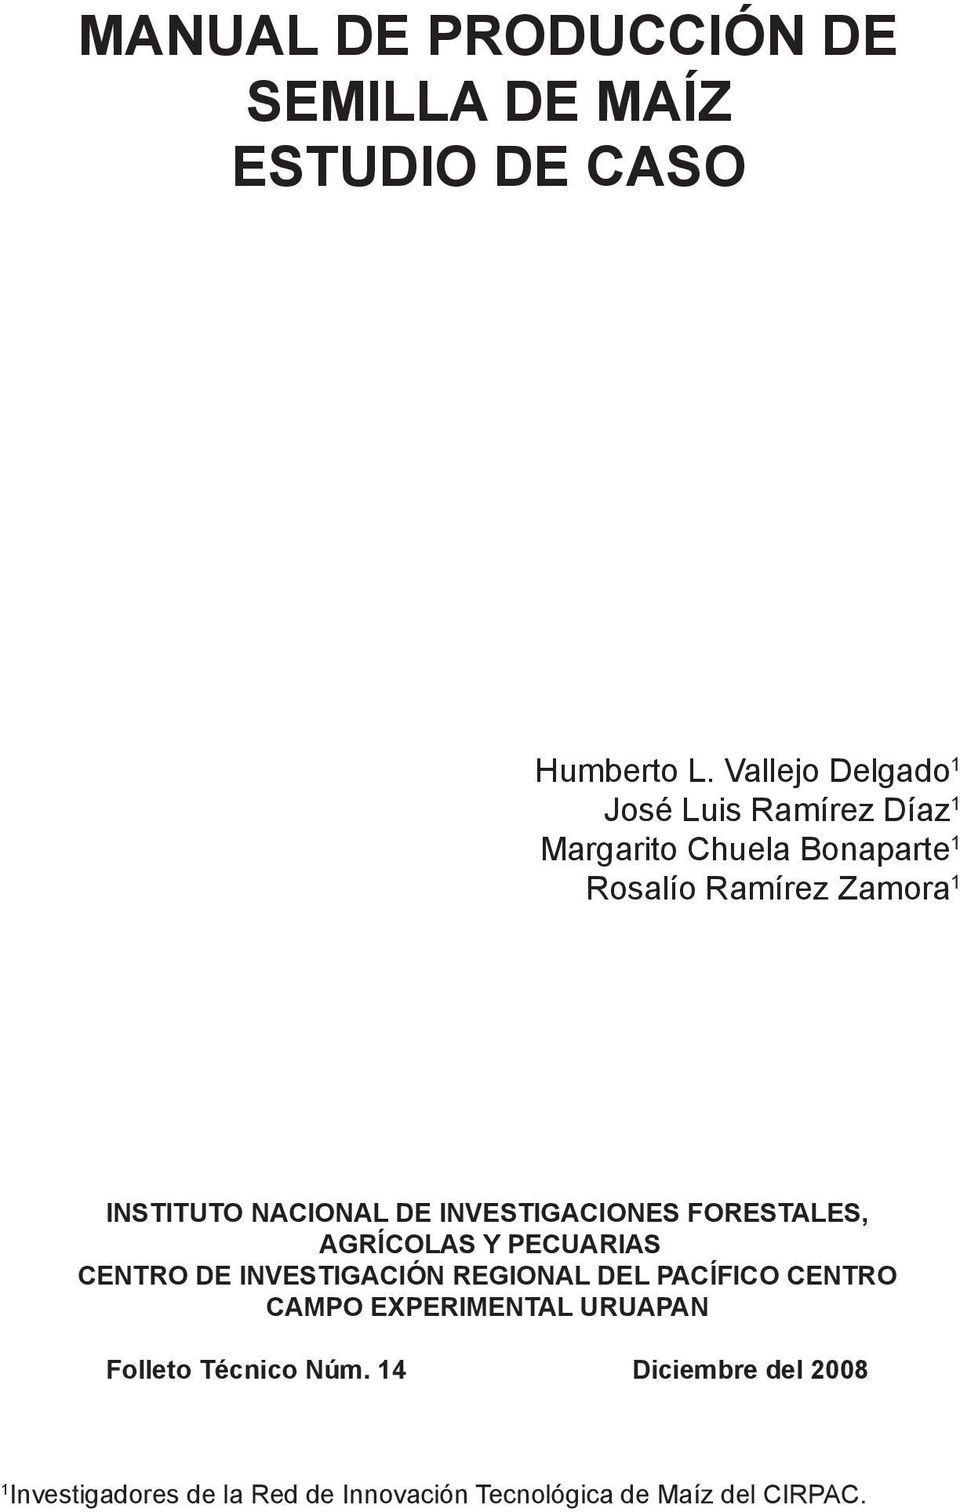 NACIONAL DE INVESTIGACIONES FORESTALES, AGRÍCOLAS Y PECUARIAS CENTRO DE INVESTIGACIÓN REGIONAL DEL PACÍFICO